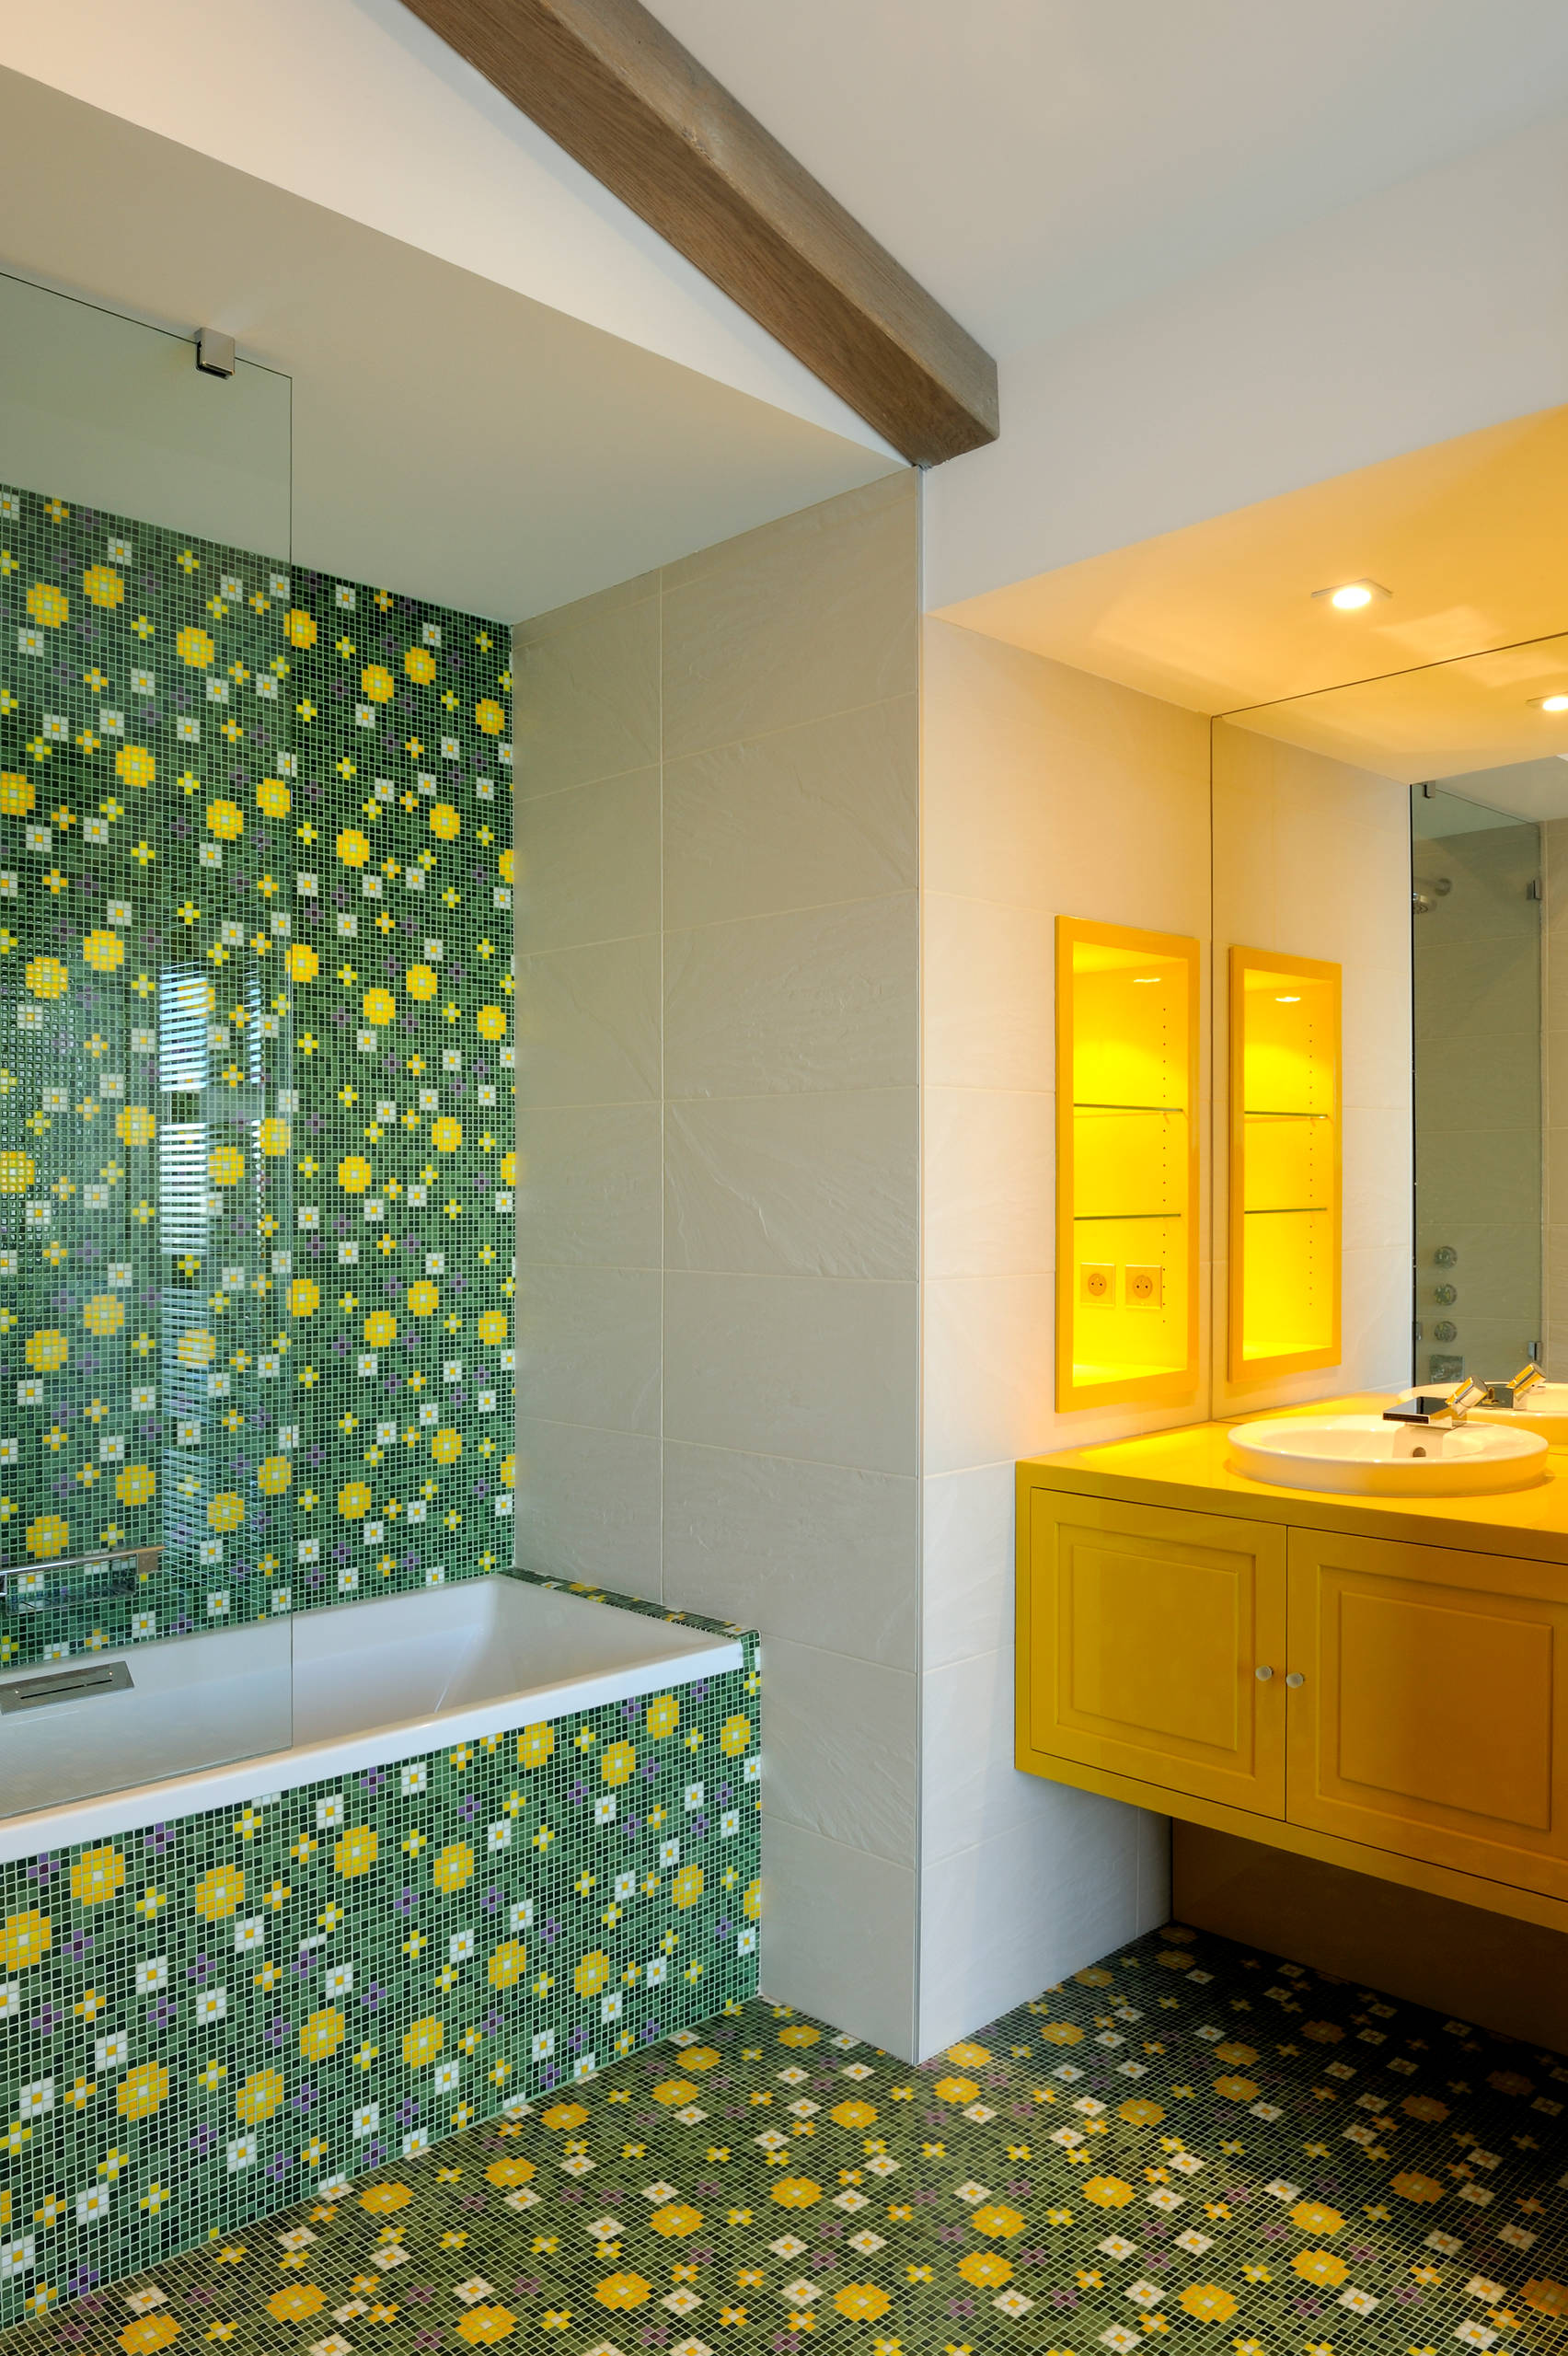 Желто-зеленая мозаика в ванной